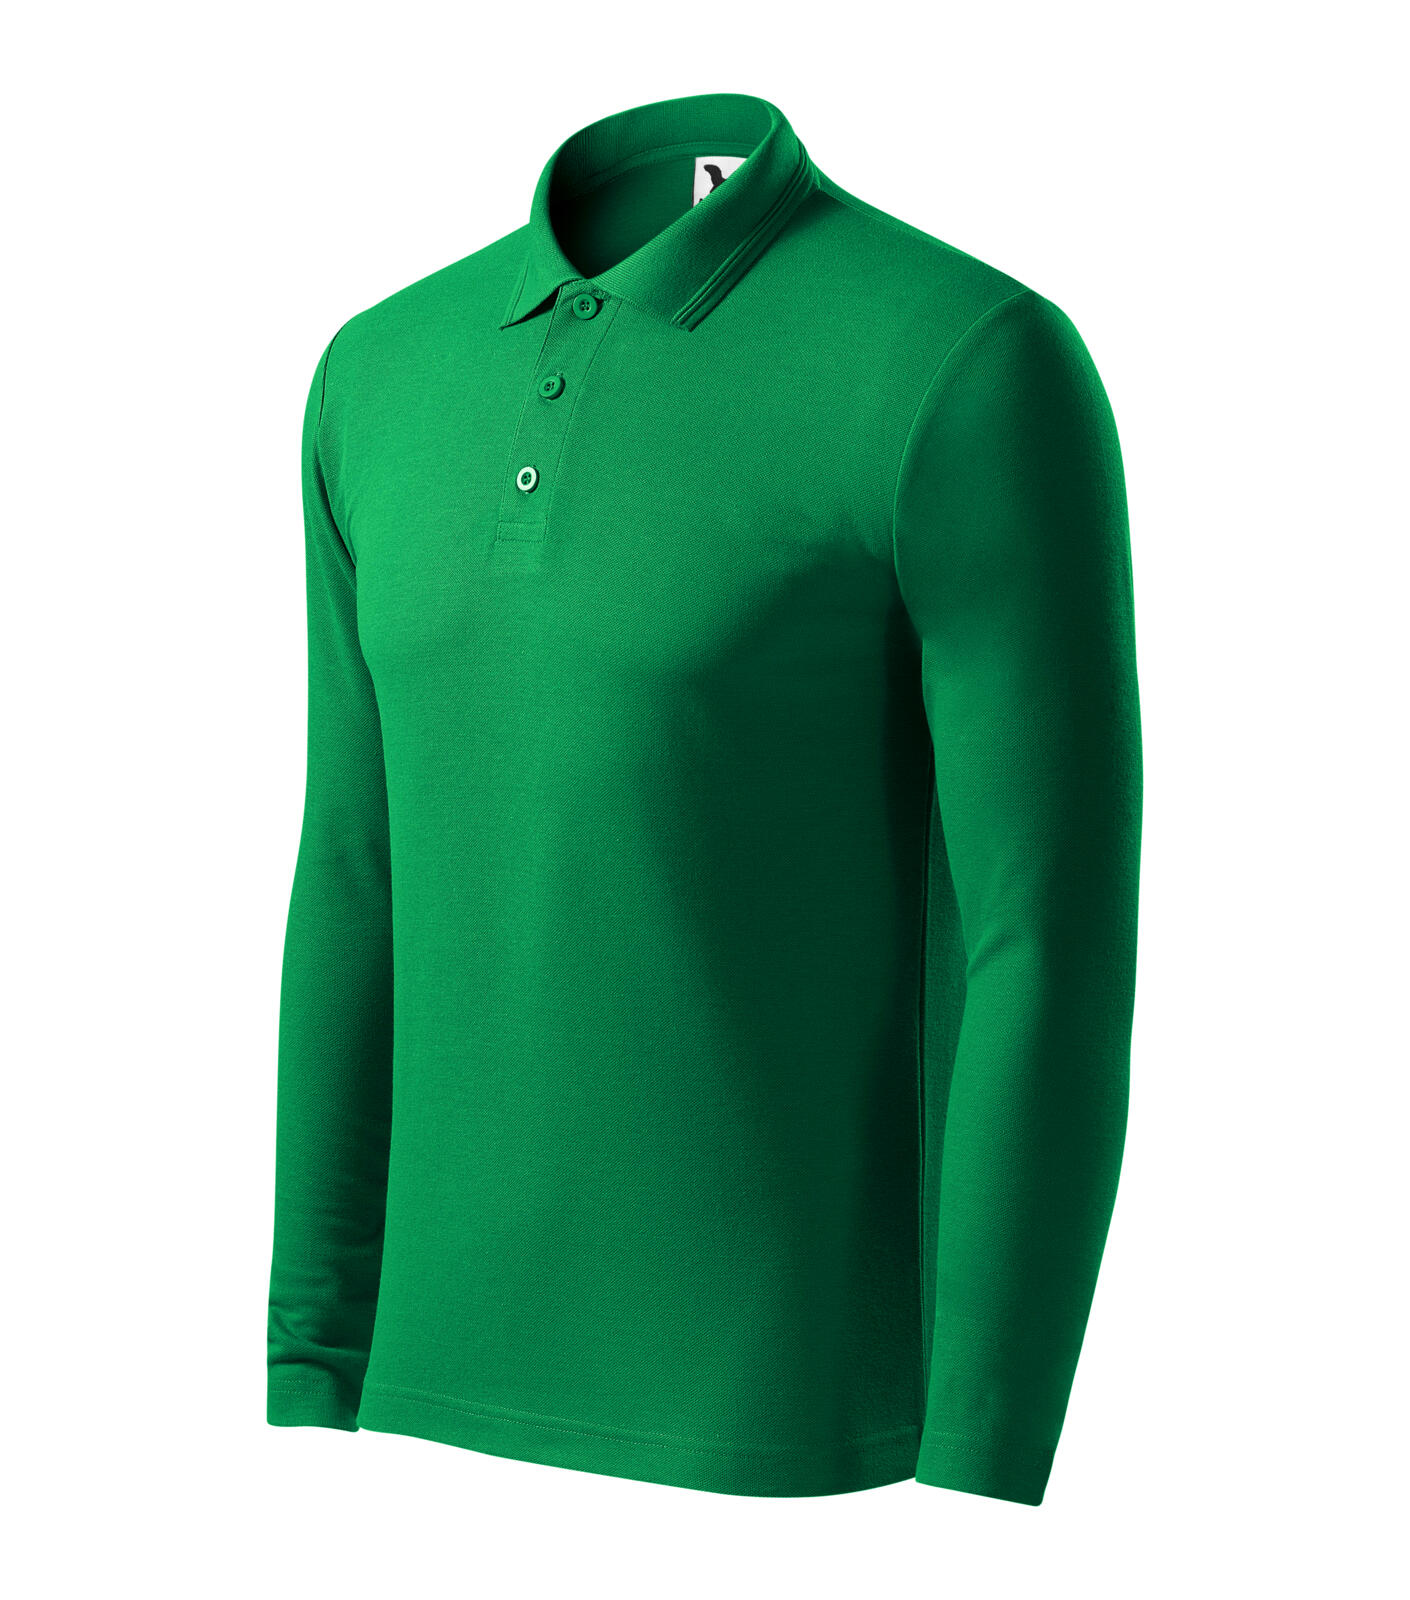 Pique Polo LS Polokošile pánská Barva: středně zelená, Velikost: 2XL